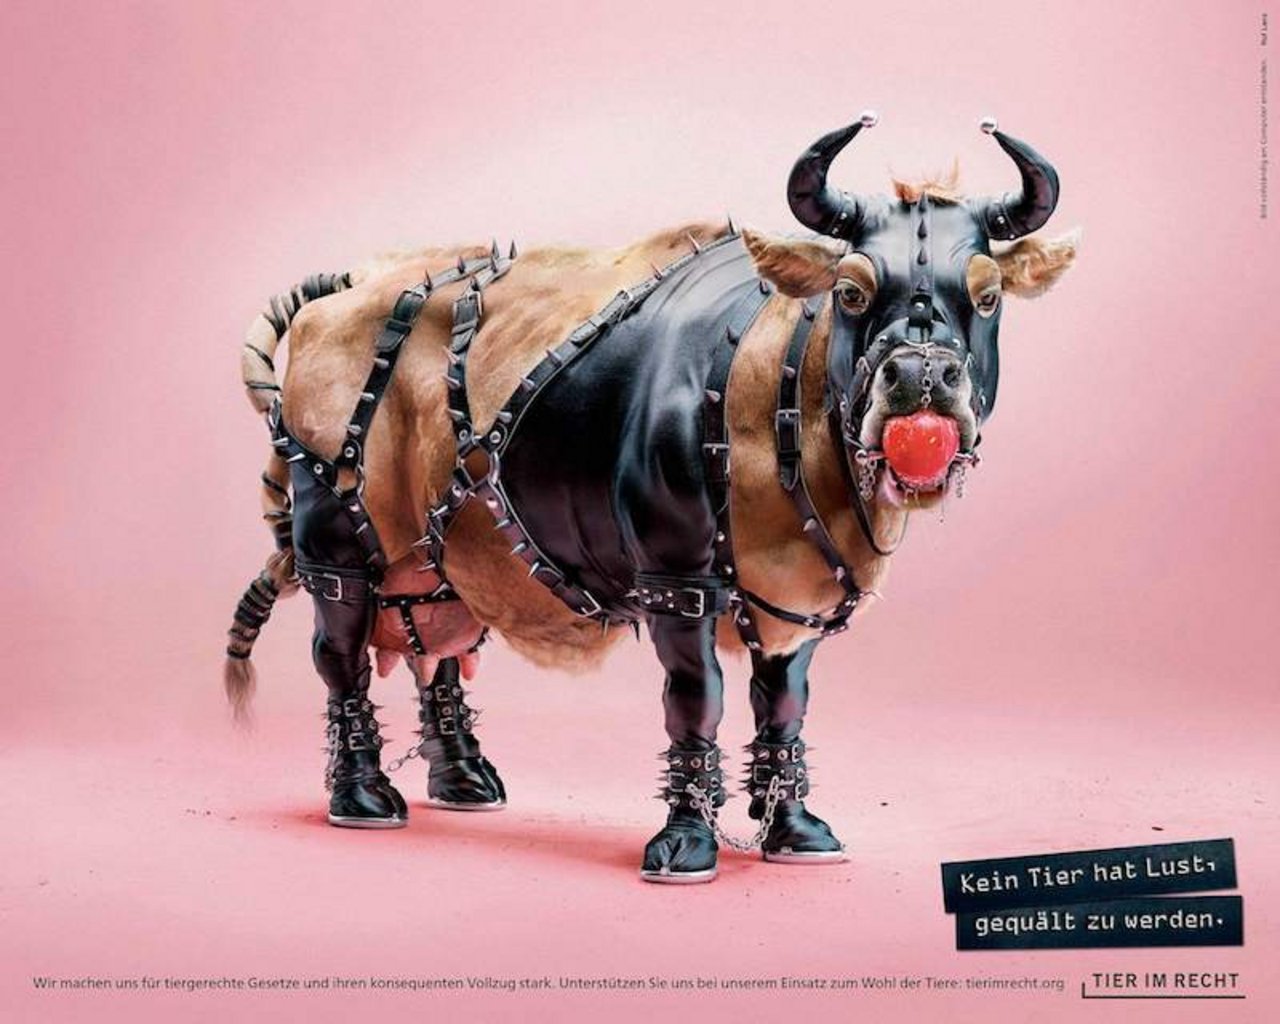 Mit dem Sujet einer Kuh im Sado-maso-Kostüm will die Organisation darauf hinweisen, dass Tiere im Gegensatz zu Menschen nie die Möglichkeit haben, ihre Einwilligung in eine quälerische Handlung zu geben. (Bilder zVg)